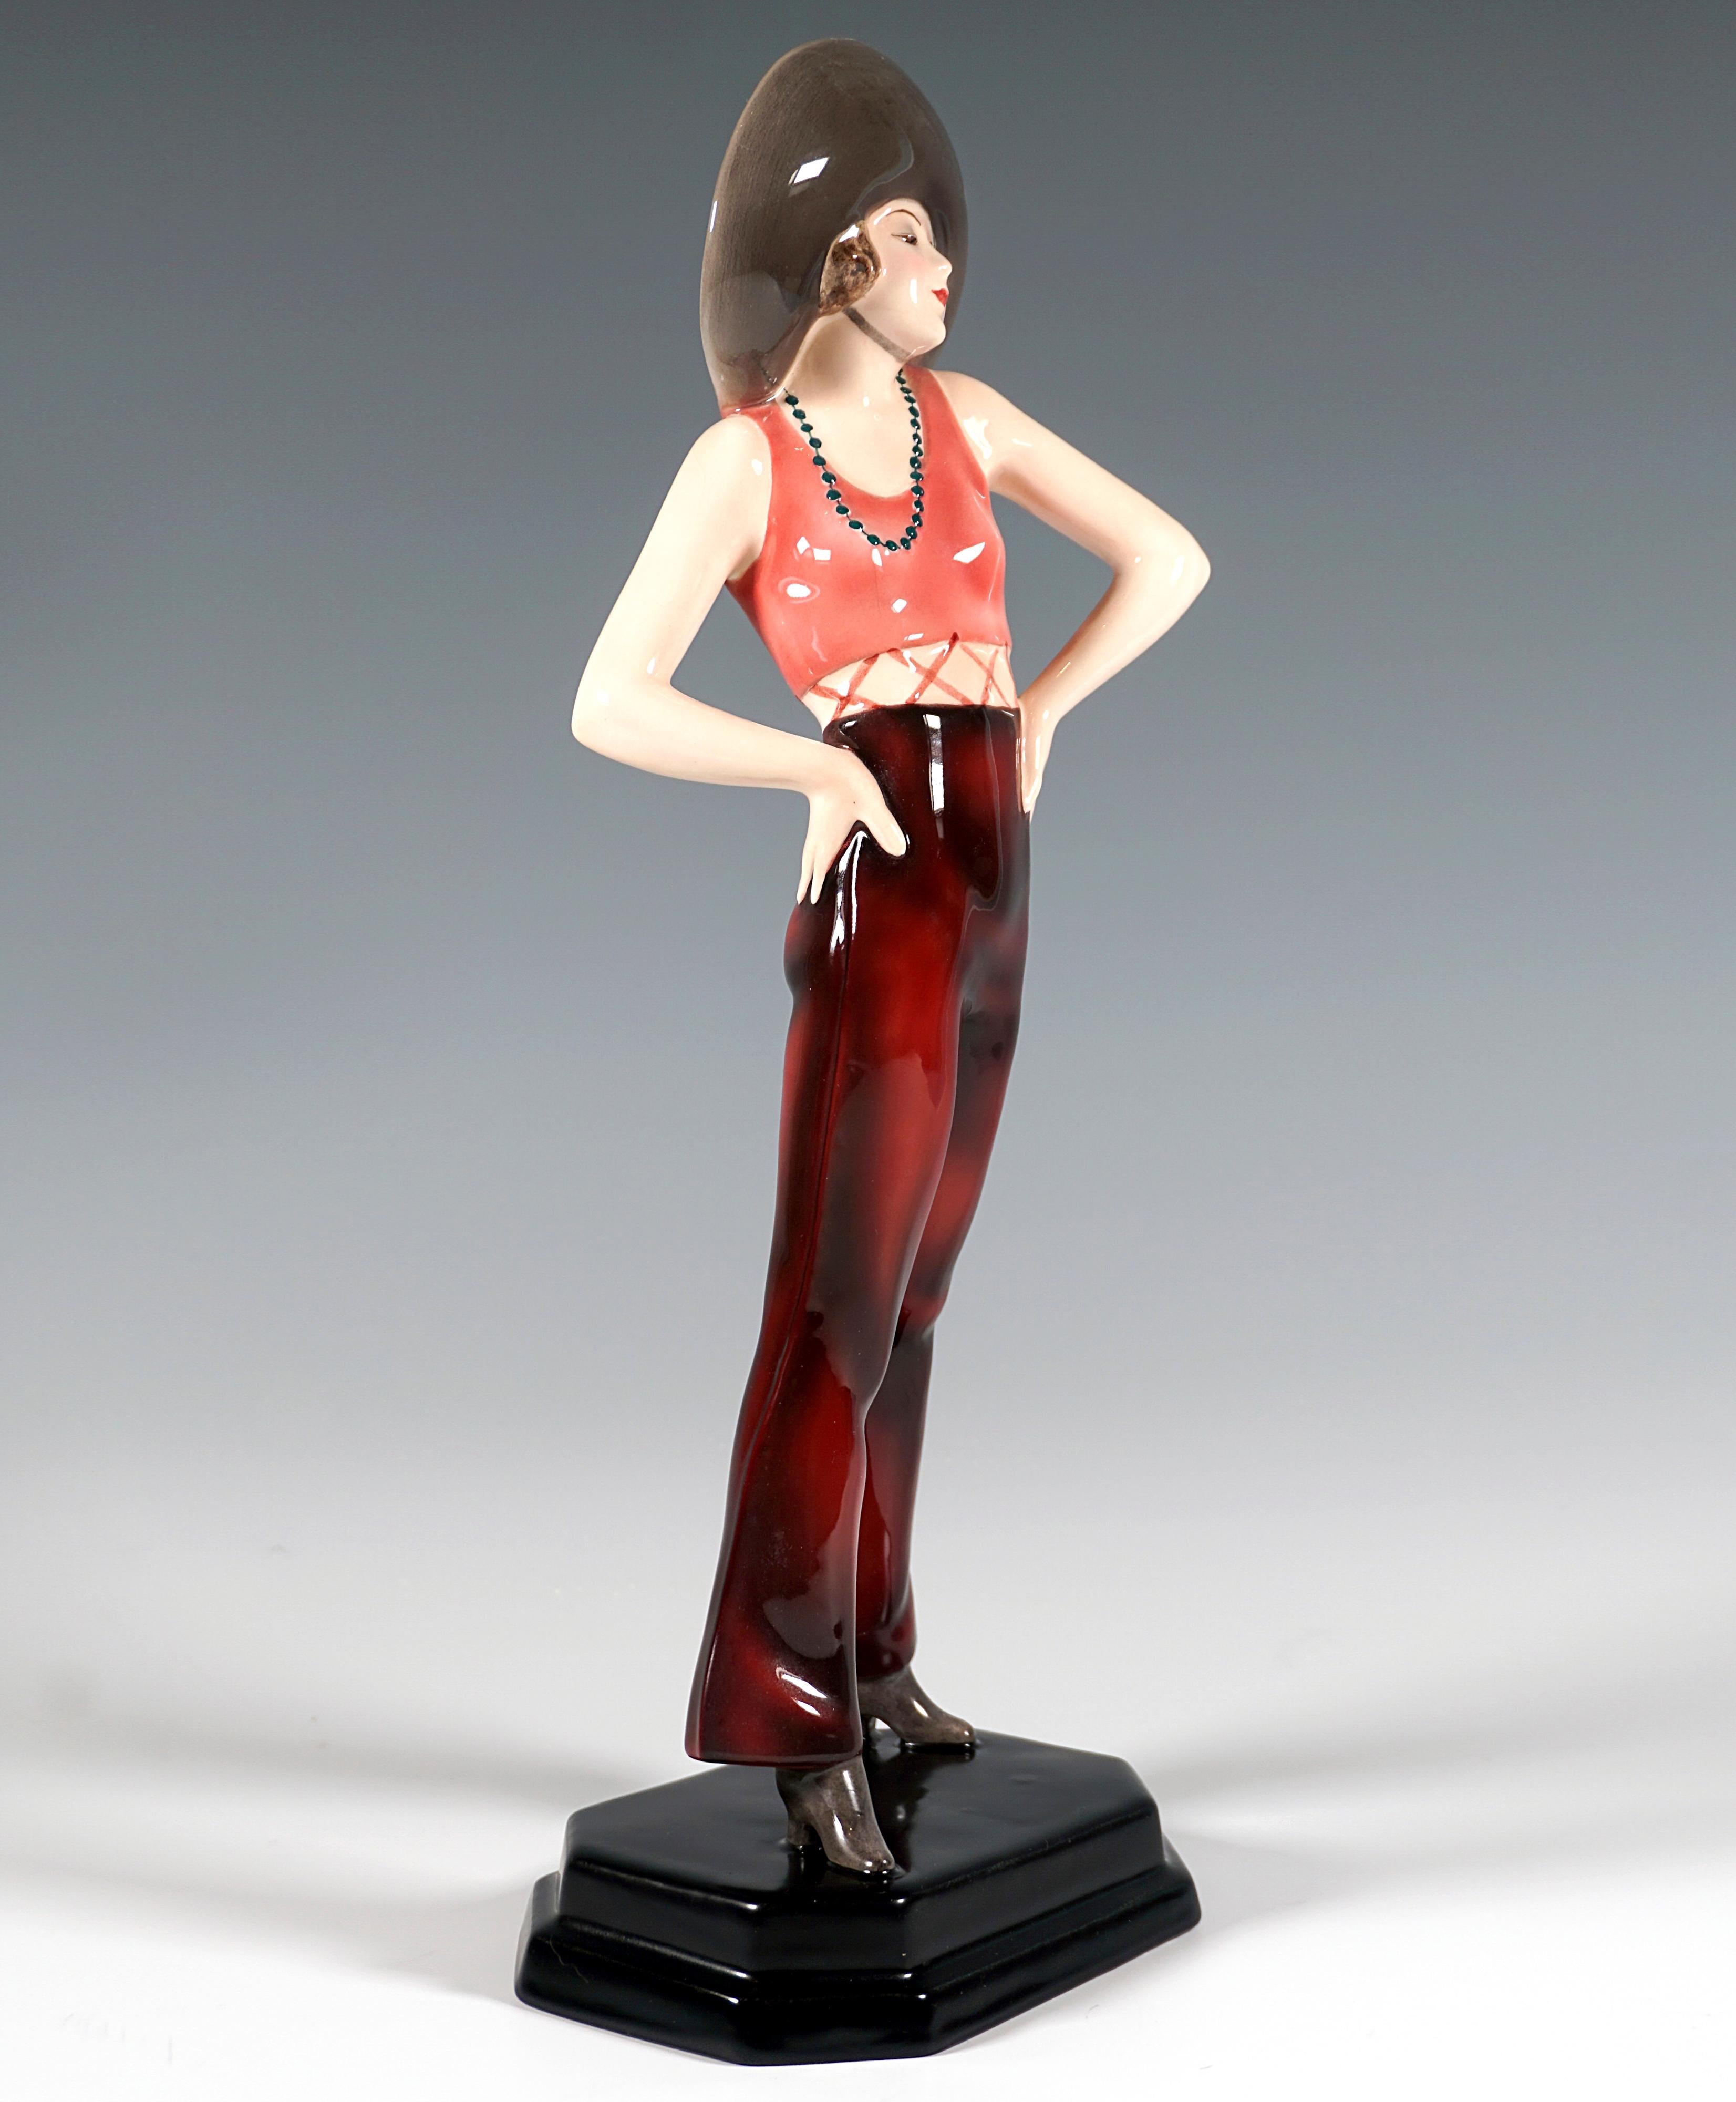 Sehr seltene Kunstkeramikfigur um 1929:
Mädchen mit breitkrempigem Hut auf den kurzen Locken, ärmelloses, kurzes Oberteil, mit langer Schlaghose und Cowboystiefeln an den Füßen, steht breitbeinig und hat die Hände in die Hüften gestemmt, um den Hals